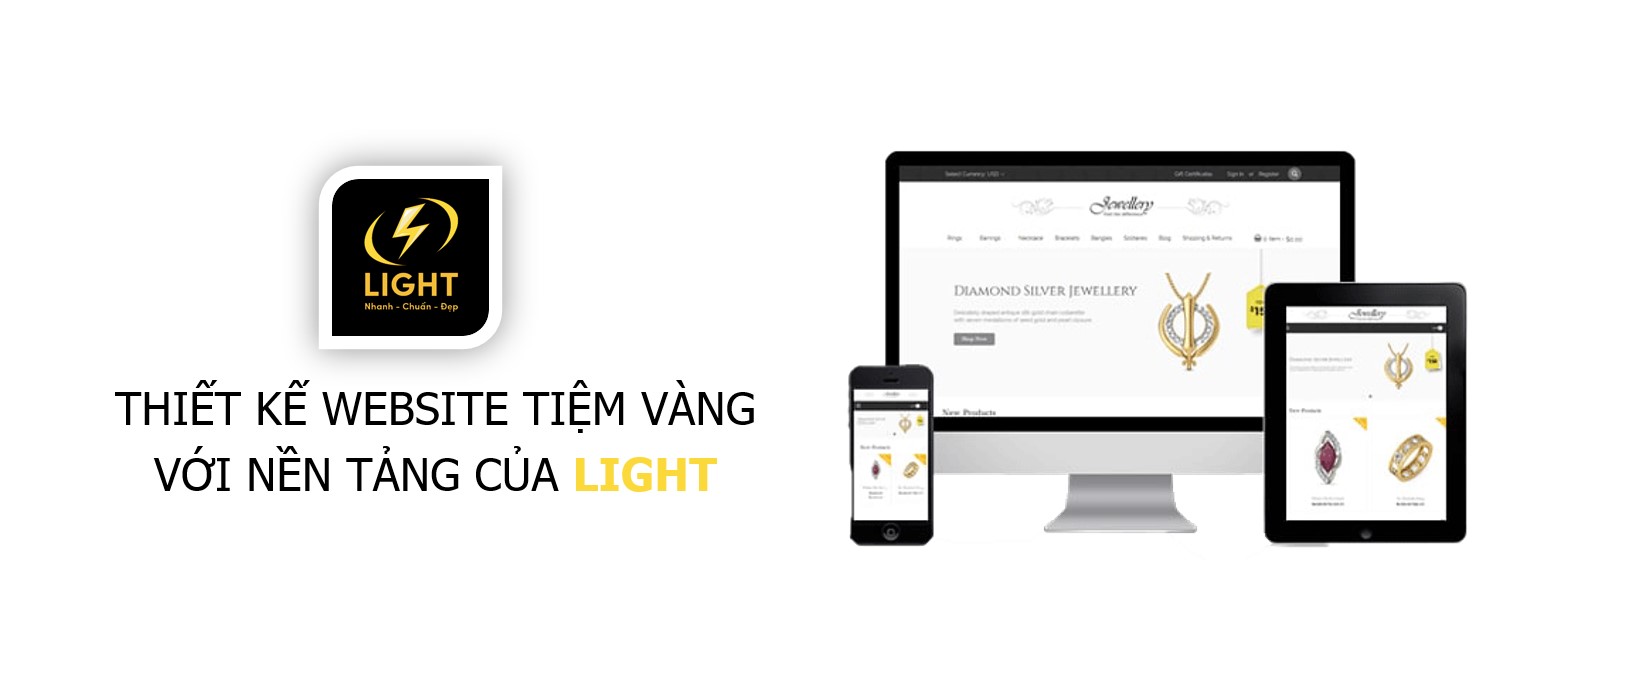 Thiết kế website tiệm vàng với nền tảng LIGHT web